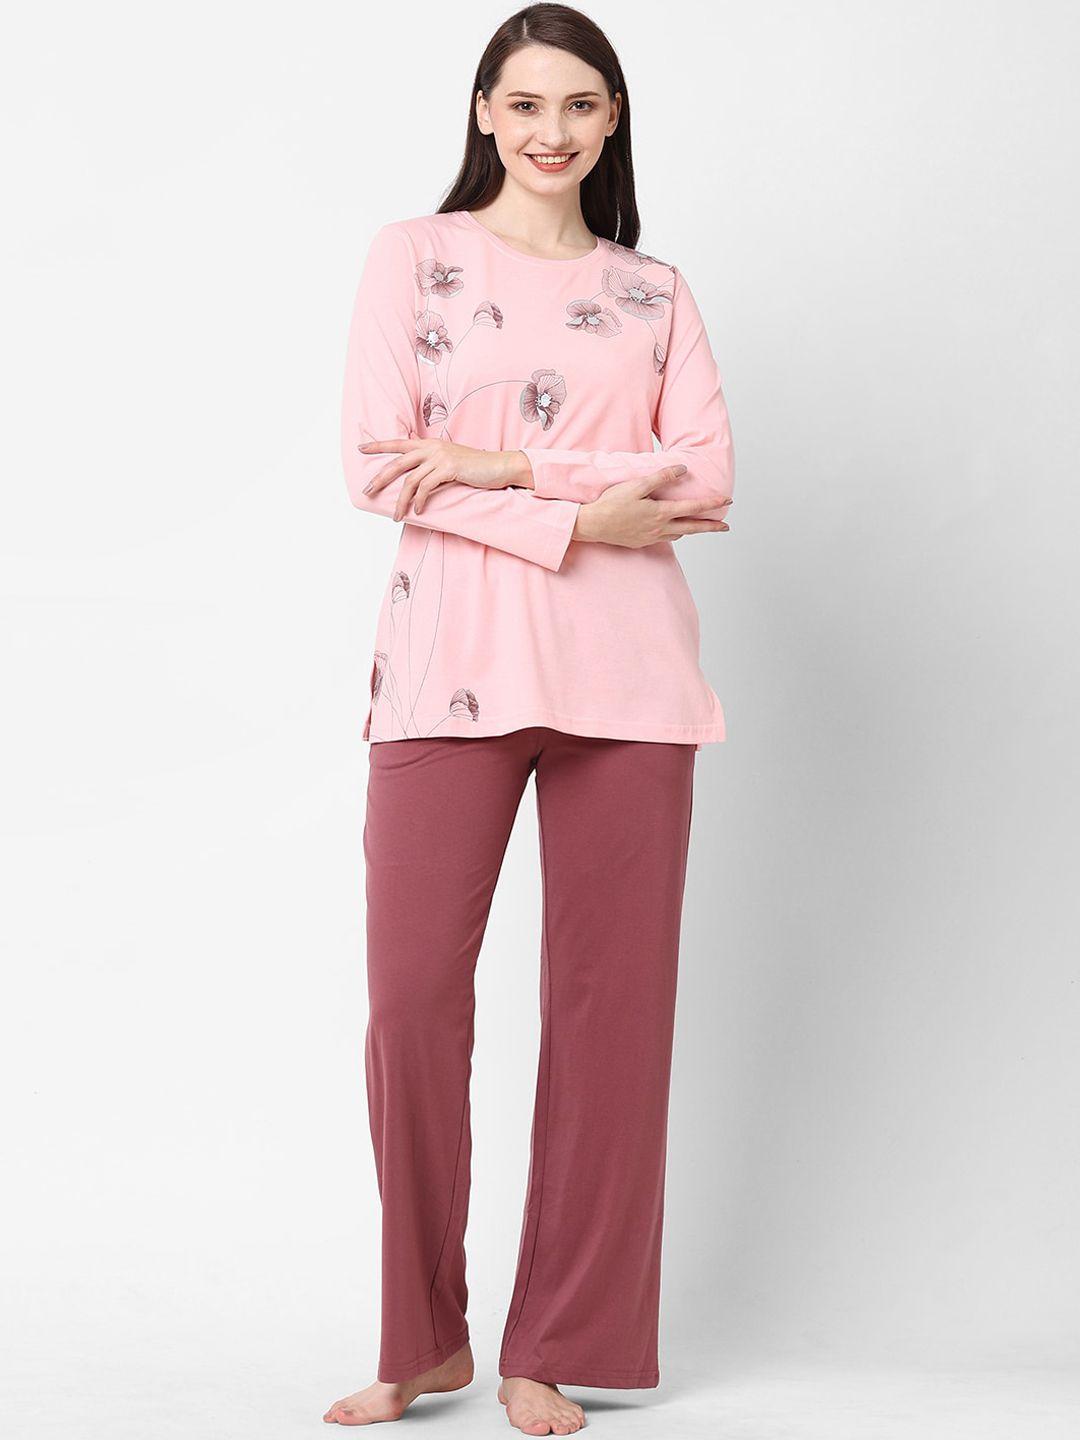 sweet-dreams-women-pink-&-maroon-printed-night-suit